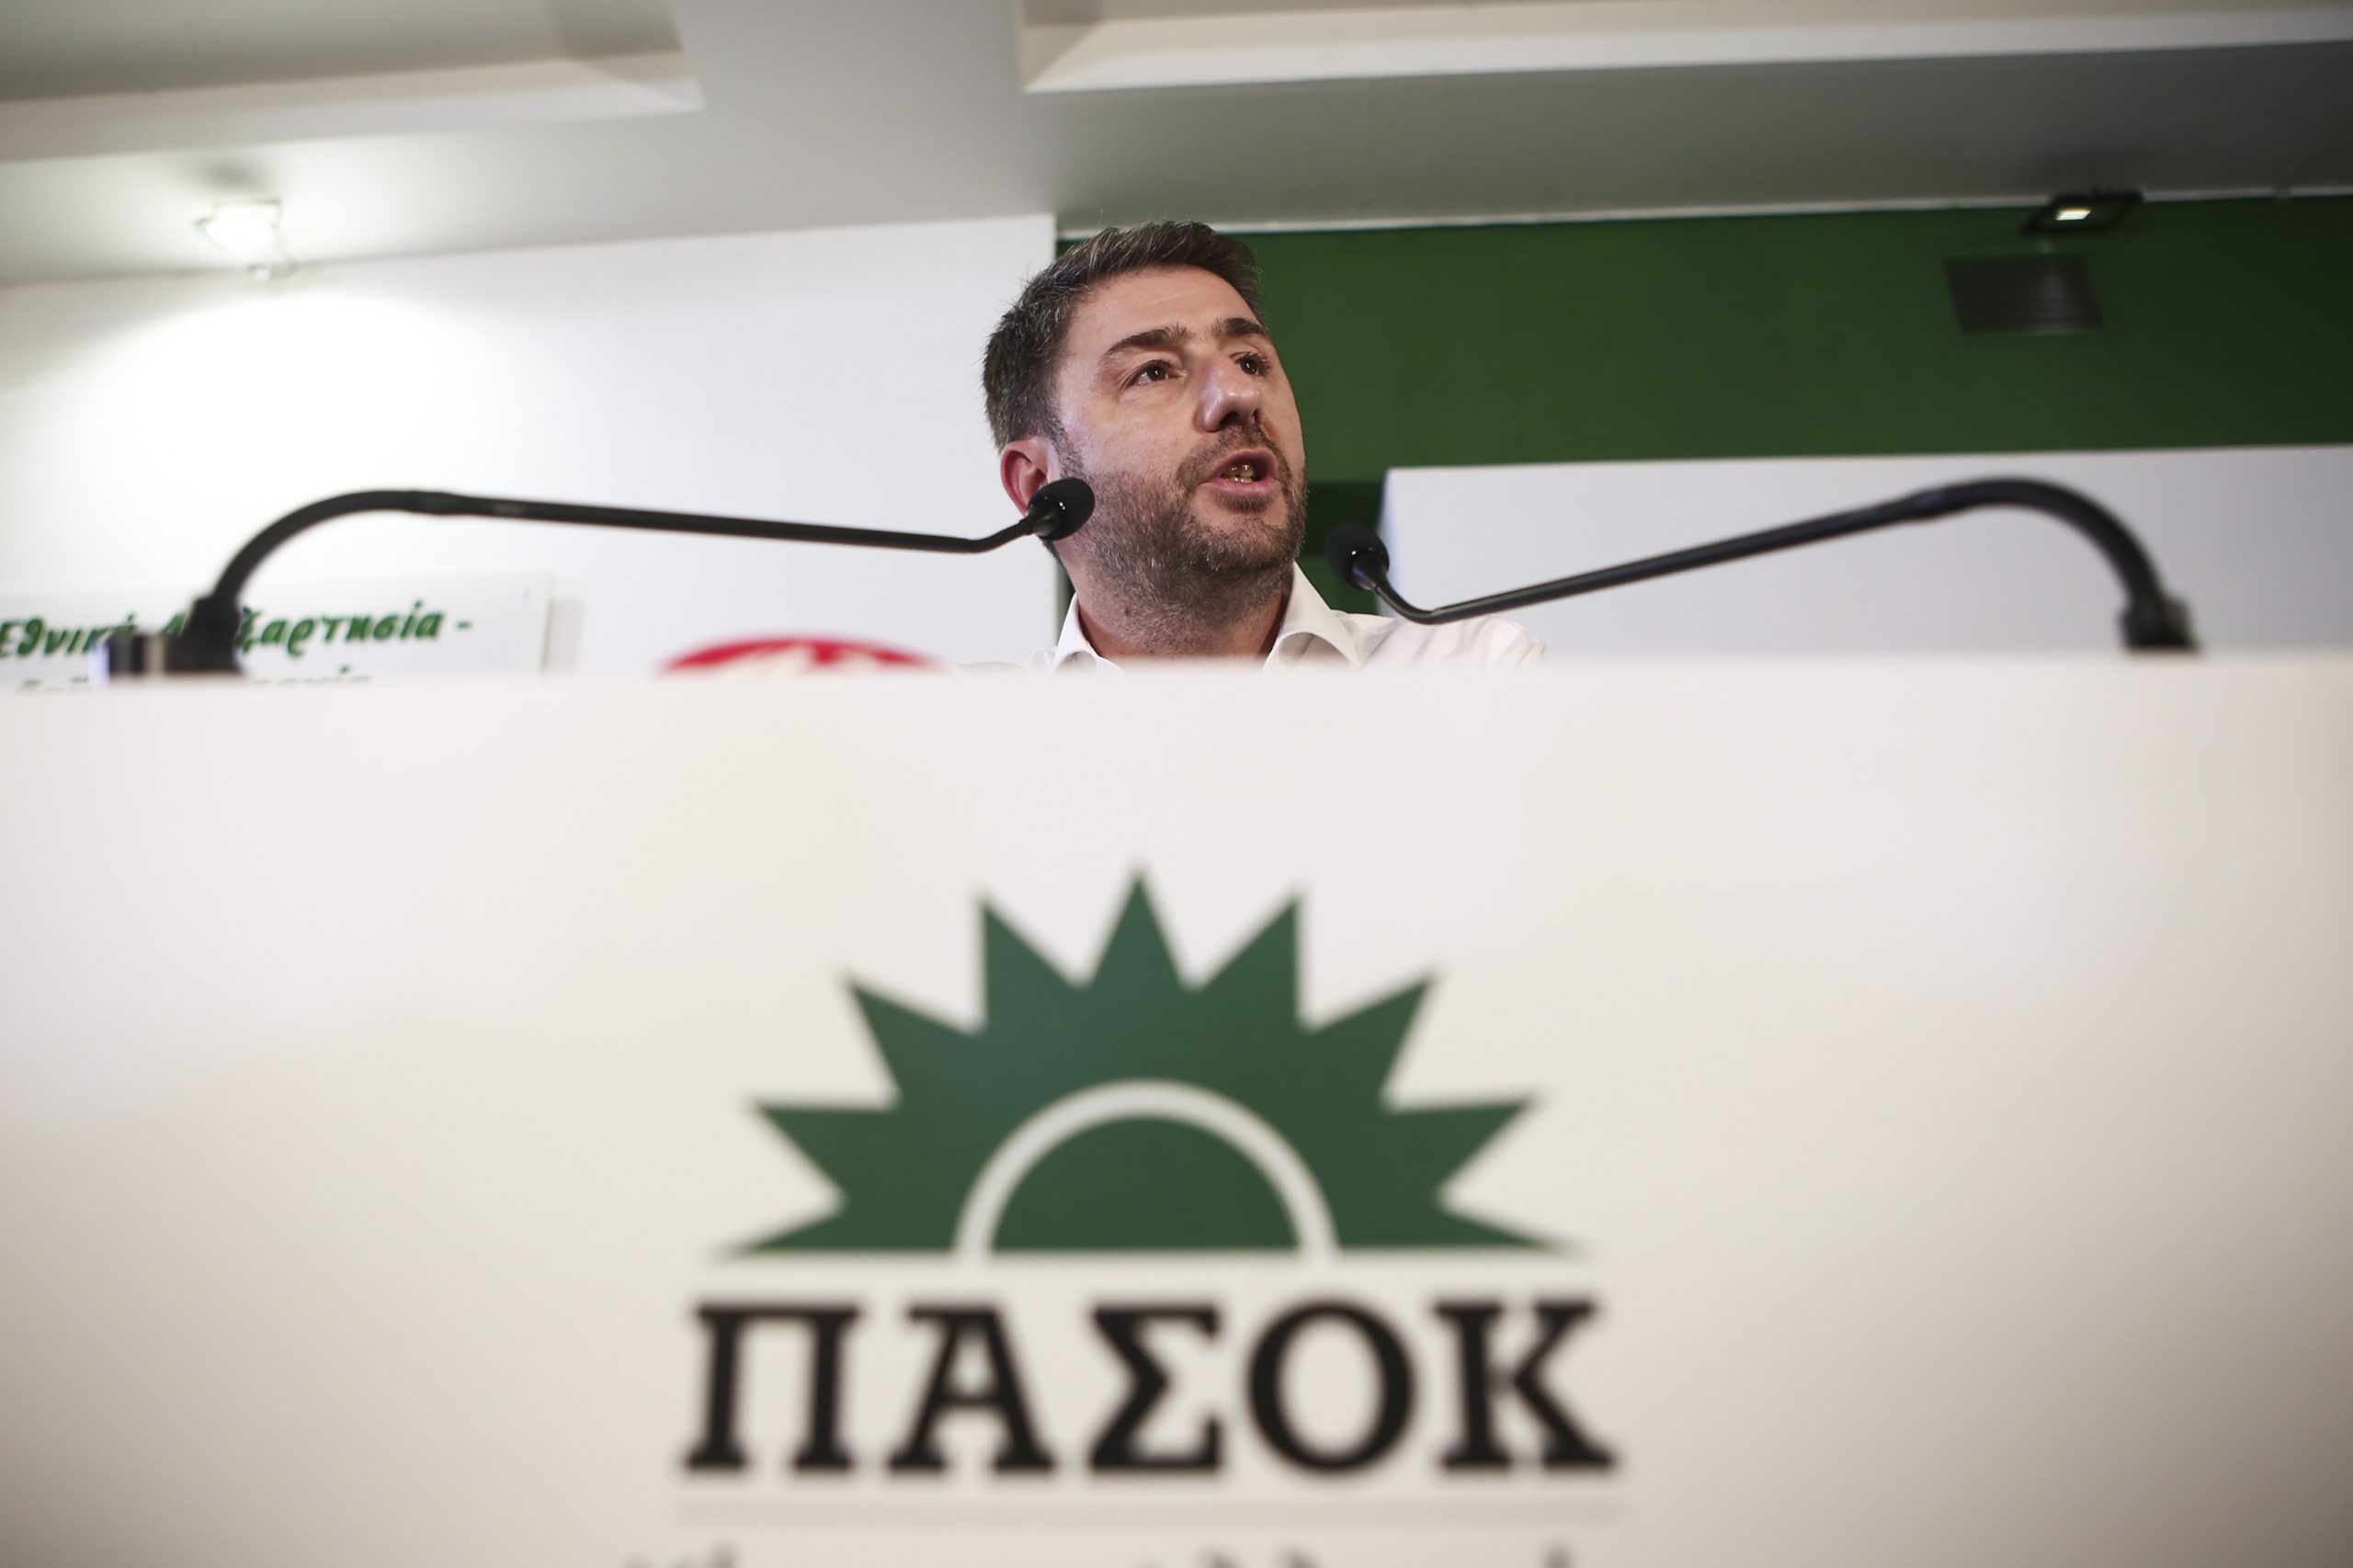 Οι ευρωσοσιαλιστές εύχονται καλή επιτυχία στο ΠΑΣΟΚ για τις εκλογές – «Η Ελλάδα χρειάζεται μια ισχυρή σοσιαλδημοκρατική φωνή»